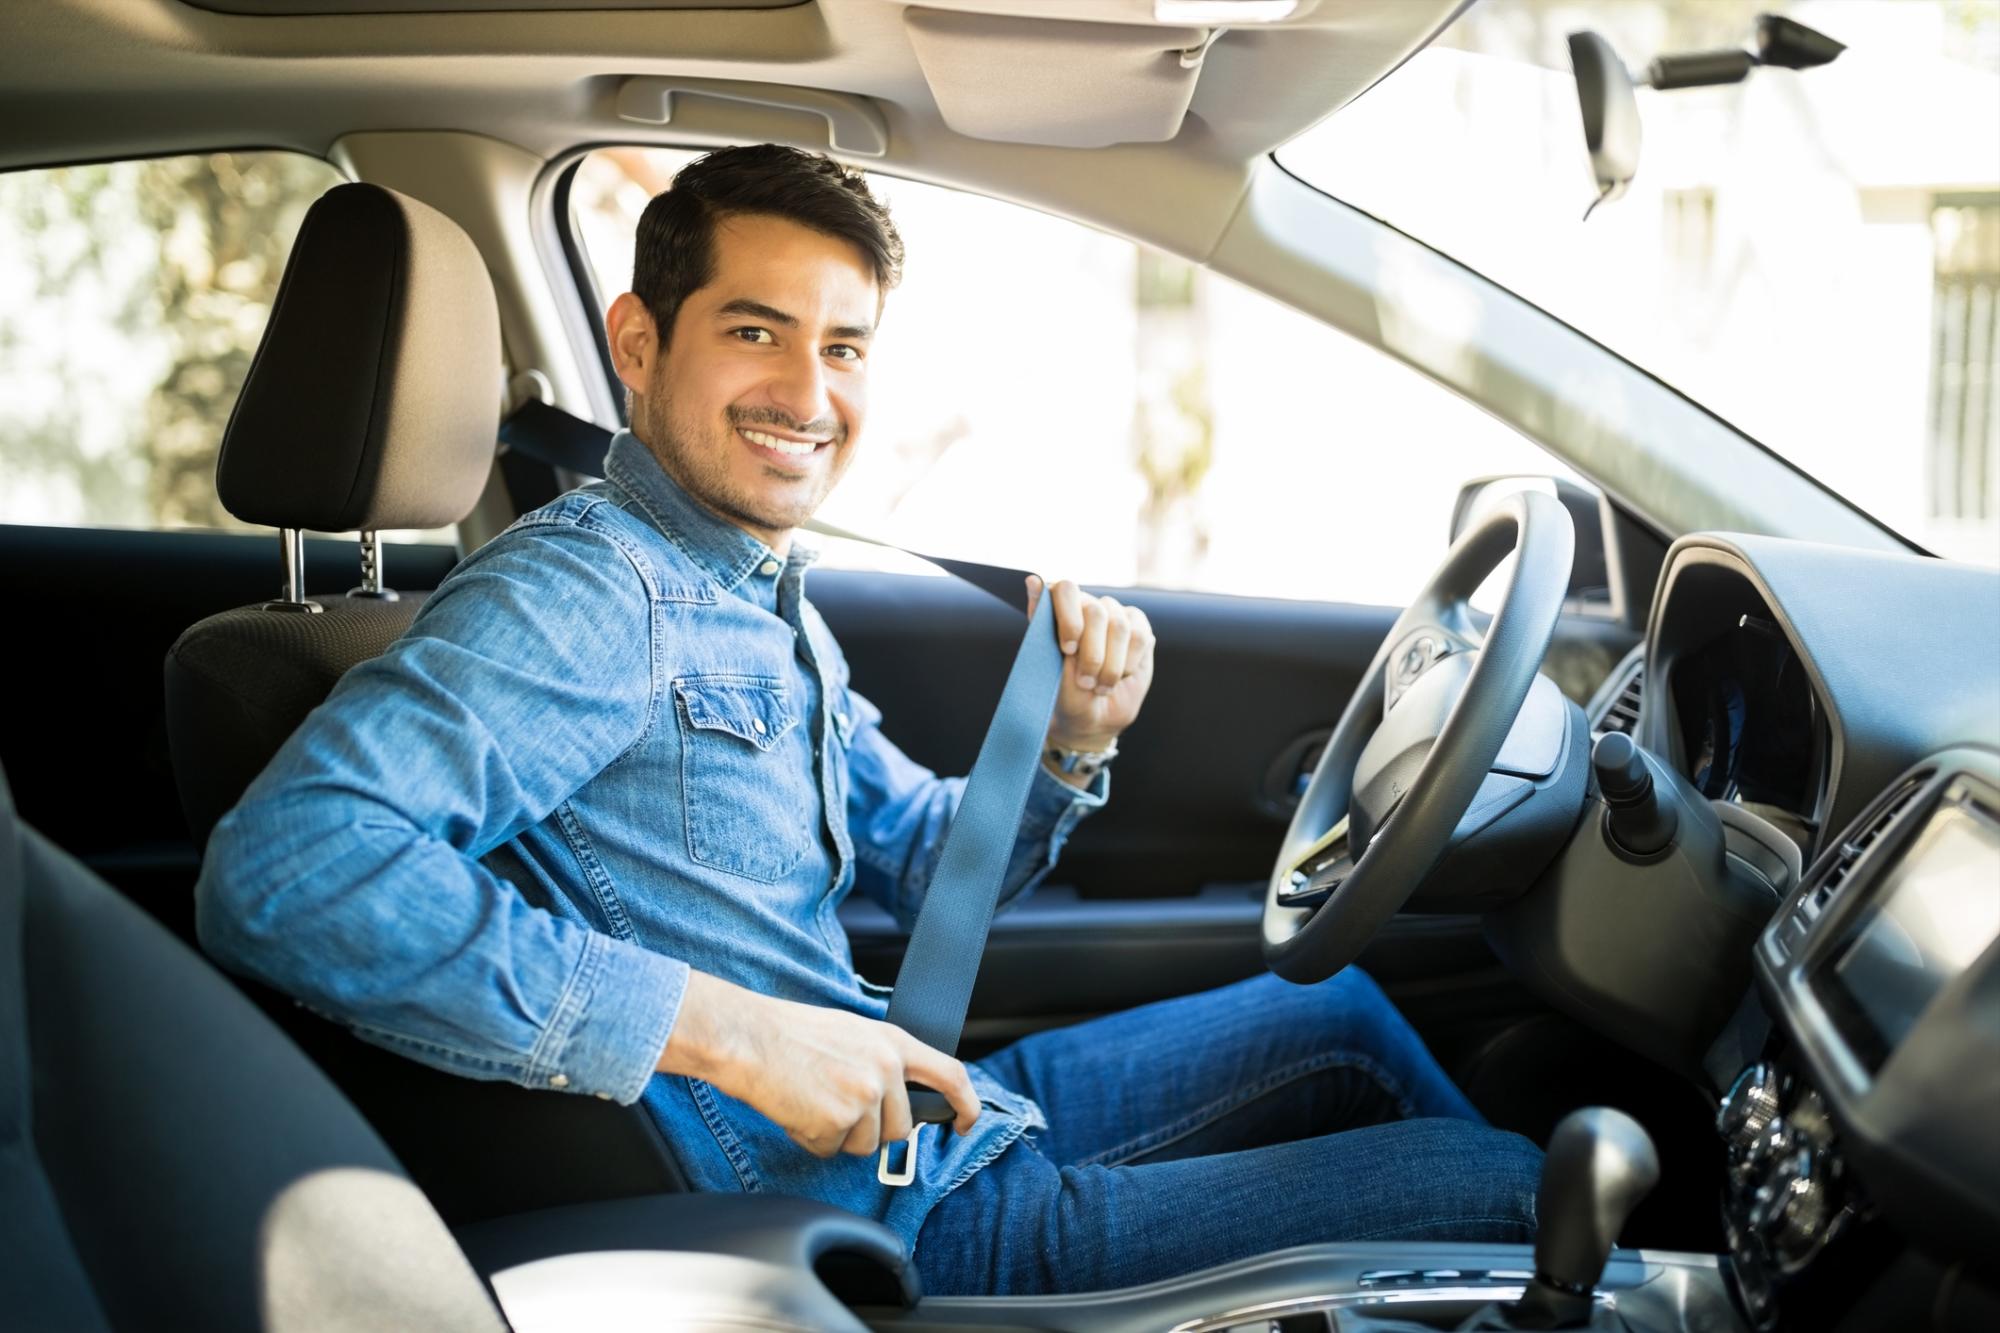 Una vez te ubiques en el asiento del conductor, mantente atento, ajusta los espejos, ponte el cinturón de seguridad y ten en cuenta las normas de circulación.